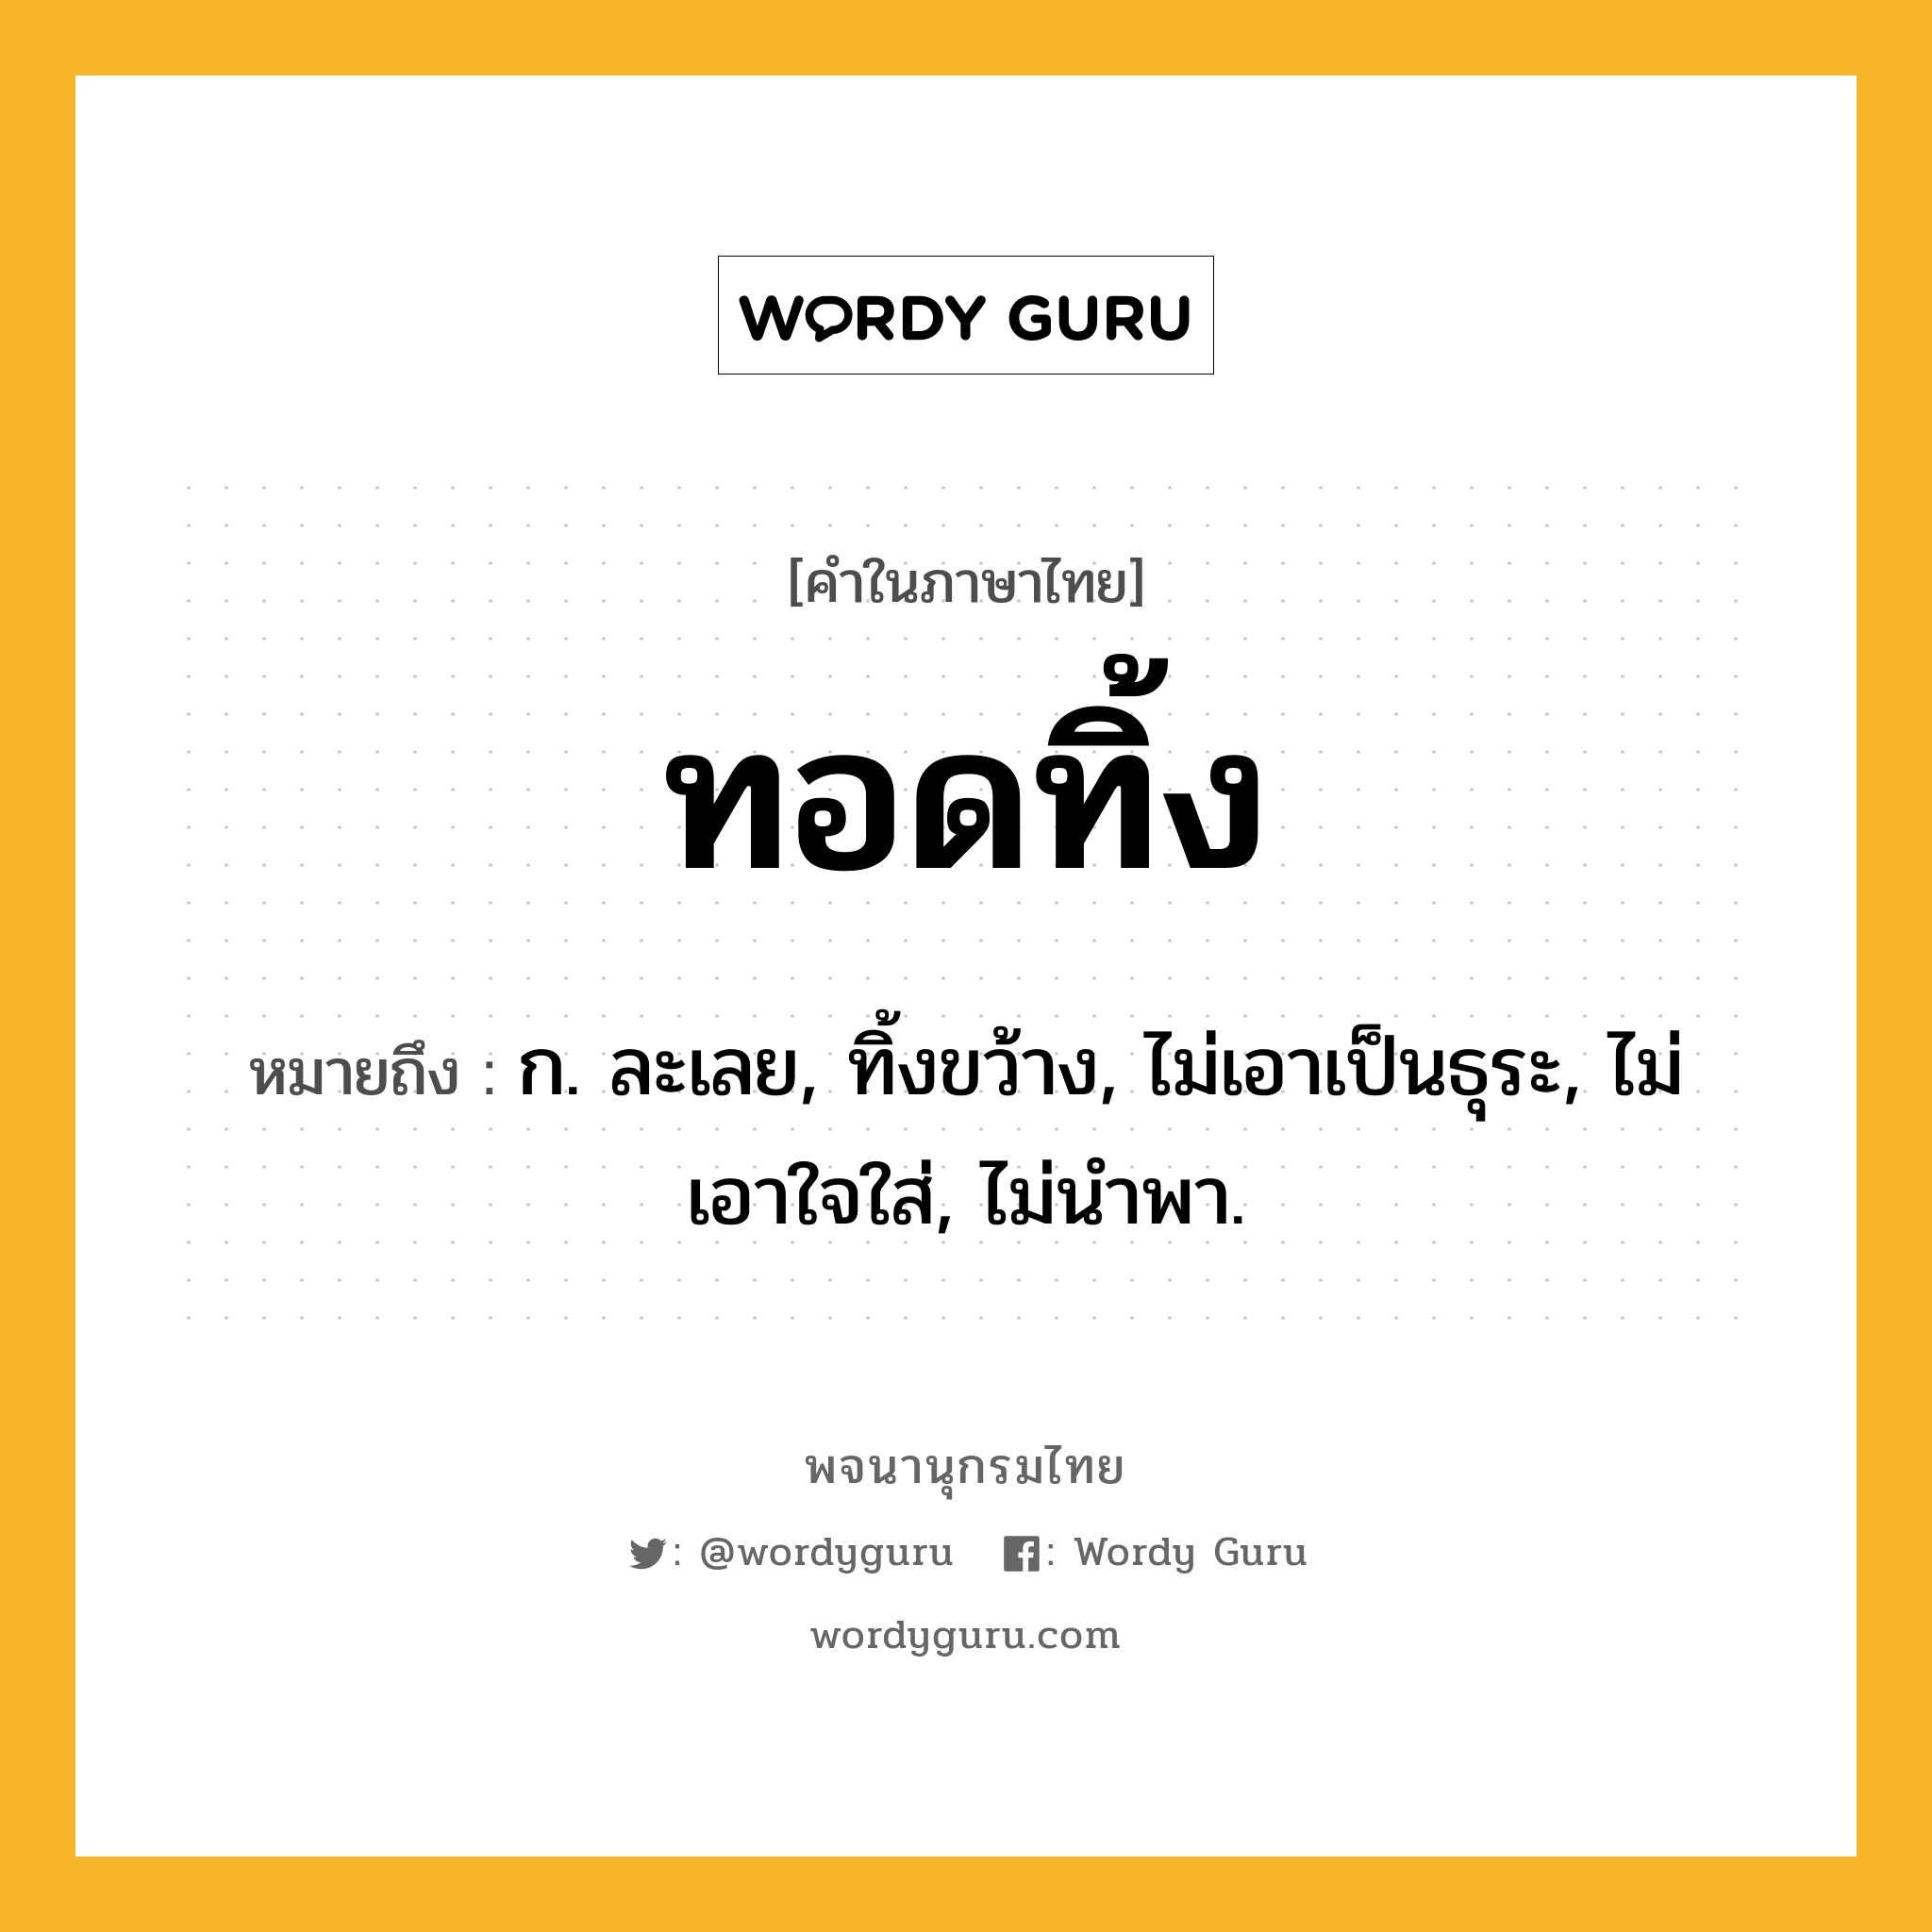 ทอดทิ้ง ความหมาย หมายถึงอะไร?, คำในภาษาไทย ทอดทิ้ง หมายถึง ก. ละเลย, ทิ้งขว้าง, ไม่เอาเป็นธุระ, ไม่เอาใจใส่, ไม่นําพา.